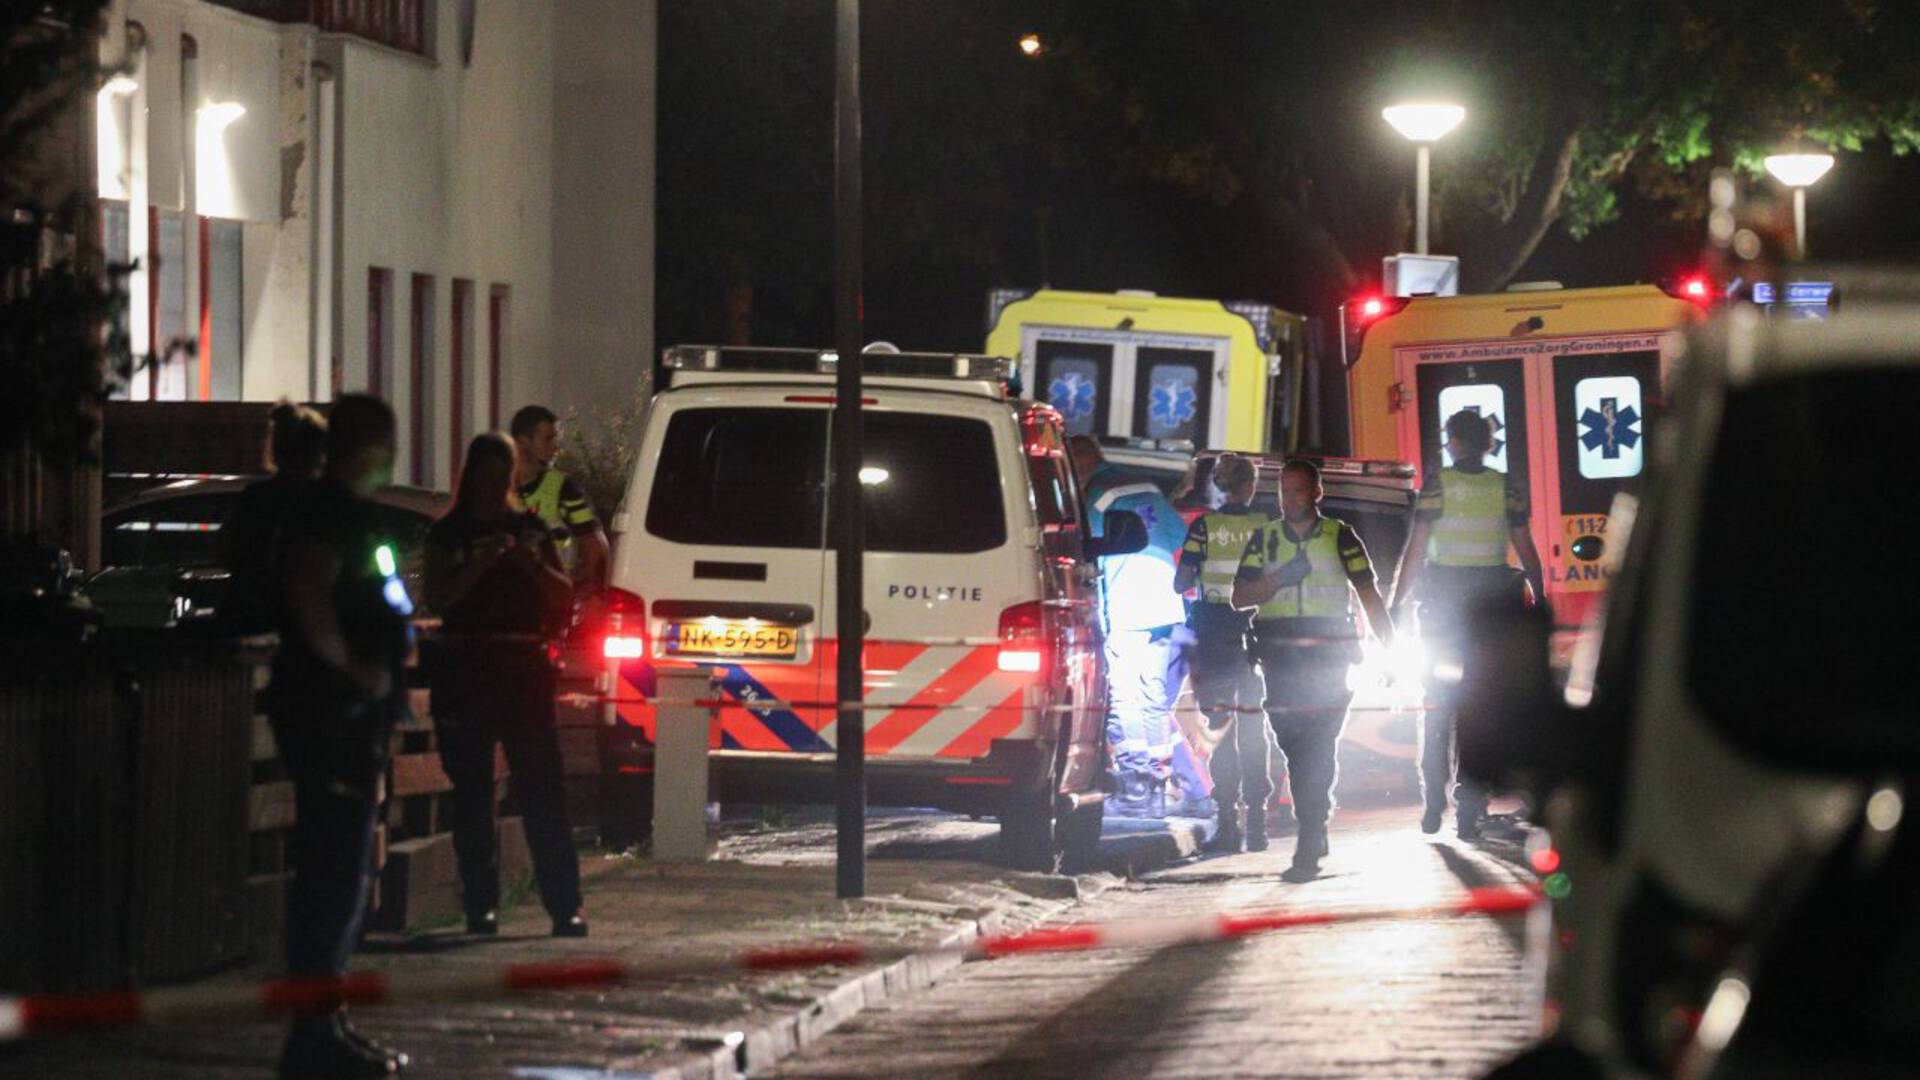 توفي رجل في Groningen بعد الاعتداء, واعتقال المشتبه بهم